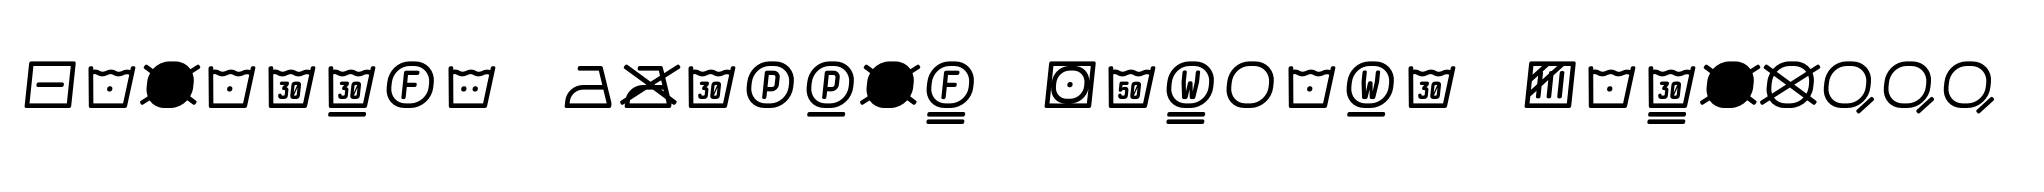 Monostep Washing Symbols Rounded Light Italic image